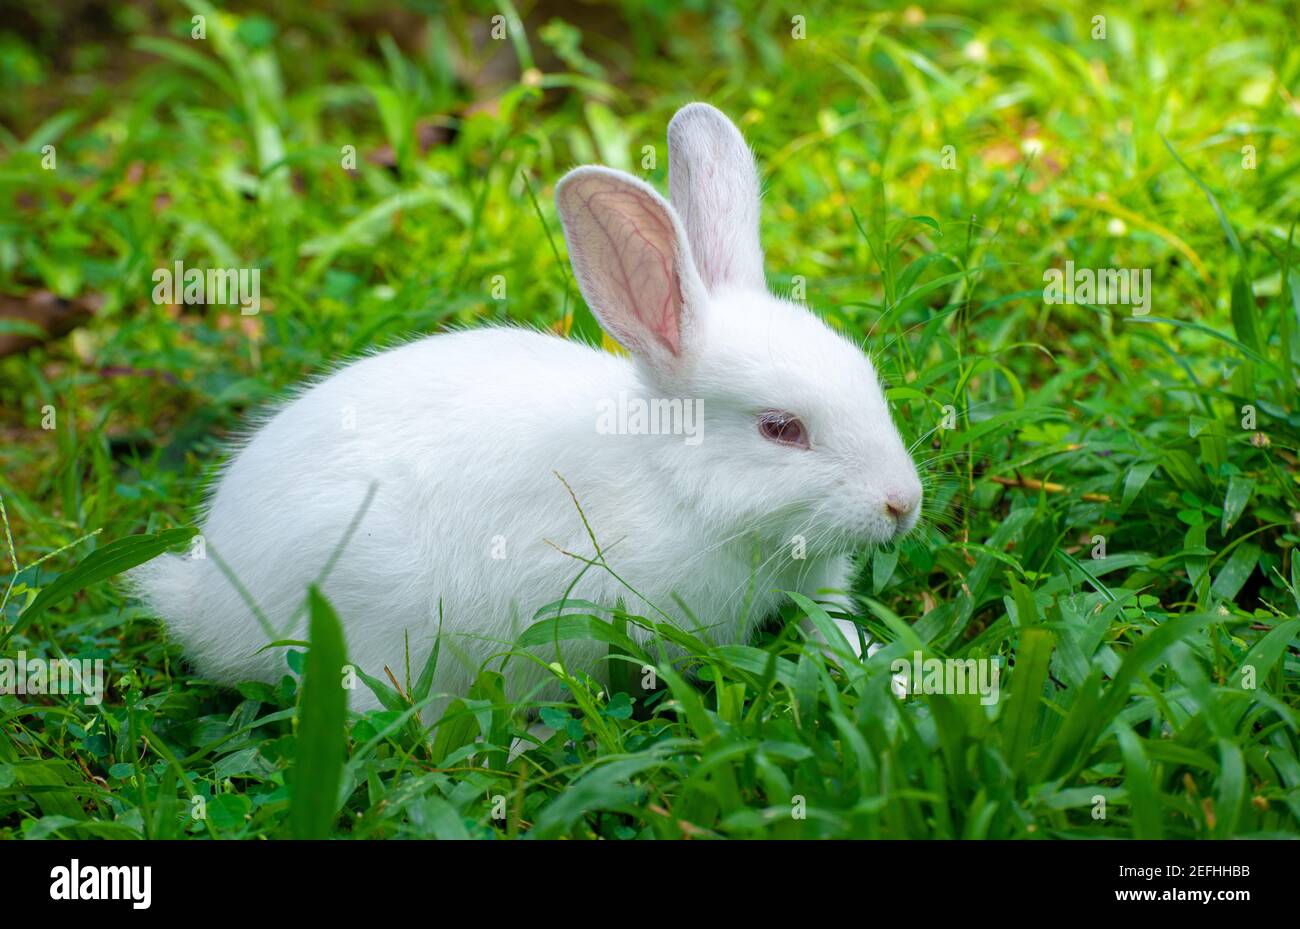 Simpatico e dolce albino coniglio coniglio bambino sul campo erba, ha avuto occhi rossi e lunghe ciglia, lunghe orecchie su, luce che passa attraverso le orecchie lunghe e p Foto Stock